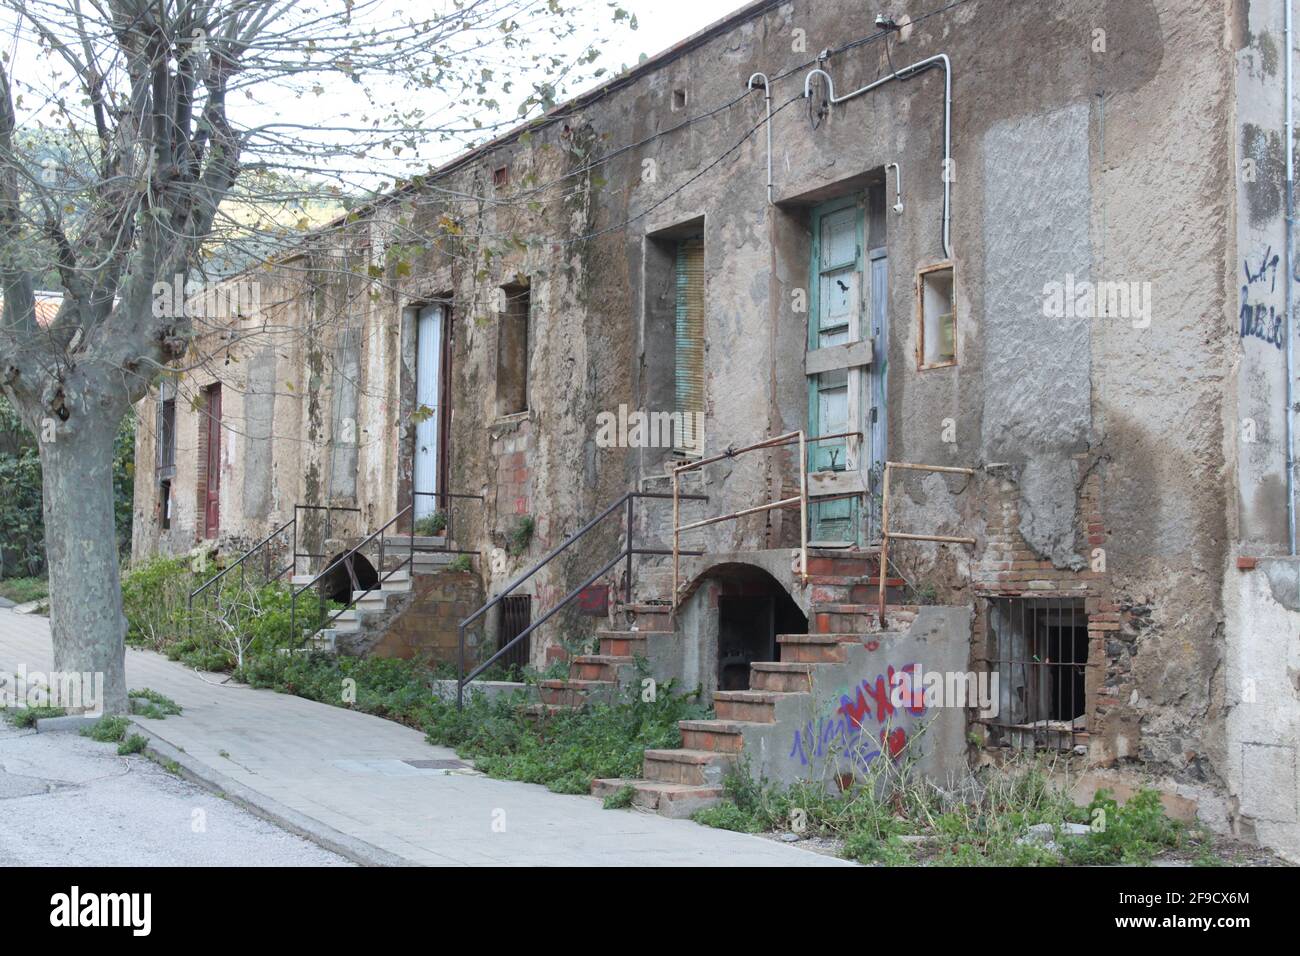 Trostlos altes Gebäude in einem deprimierenden Zustand Stockfoto